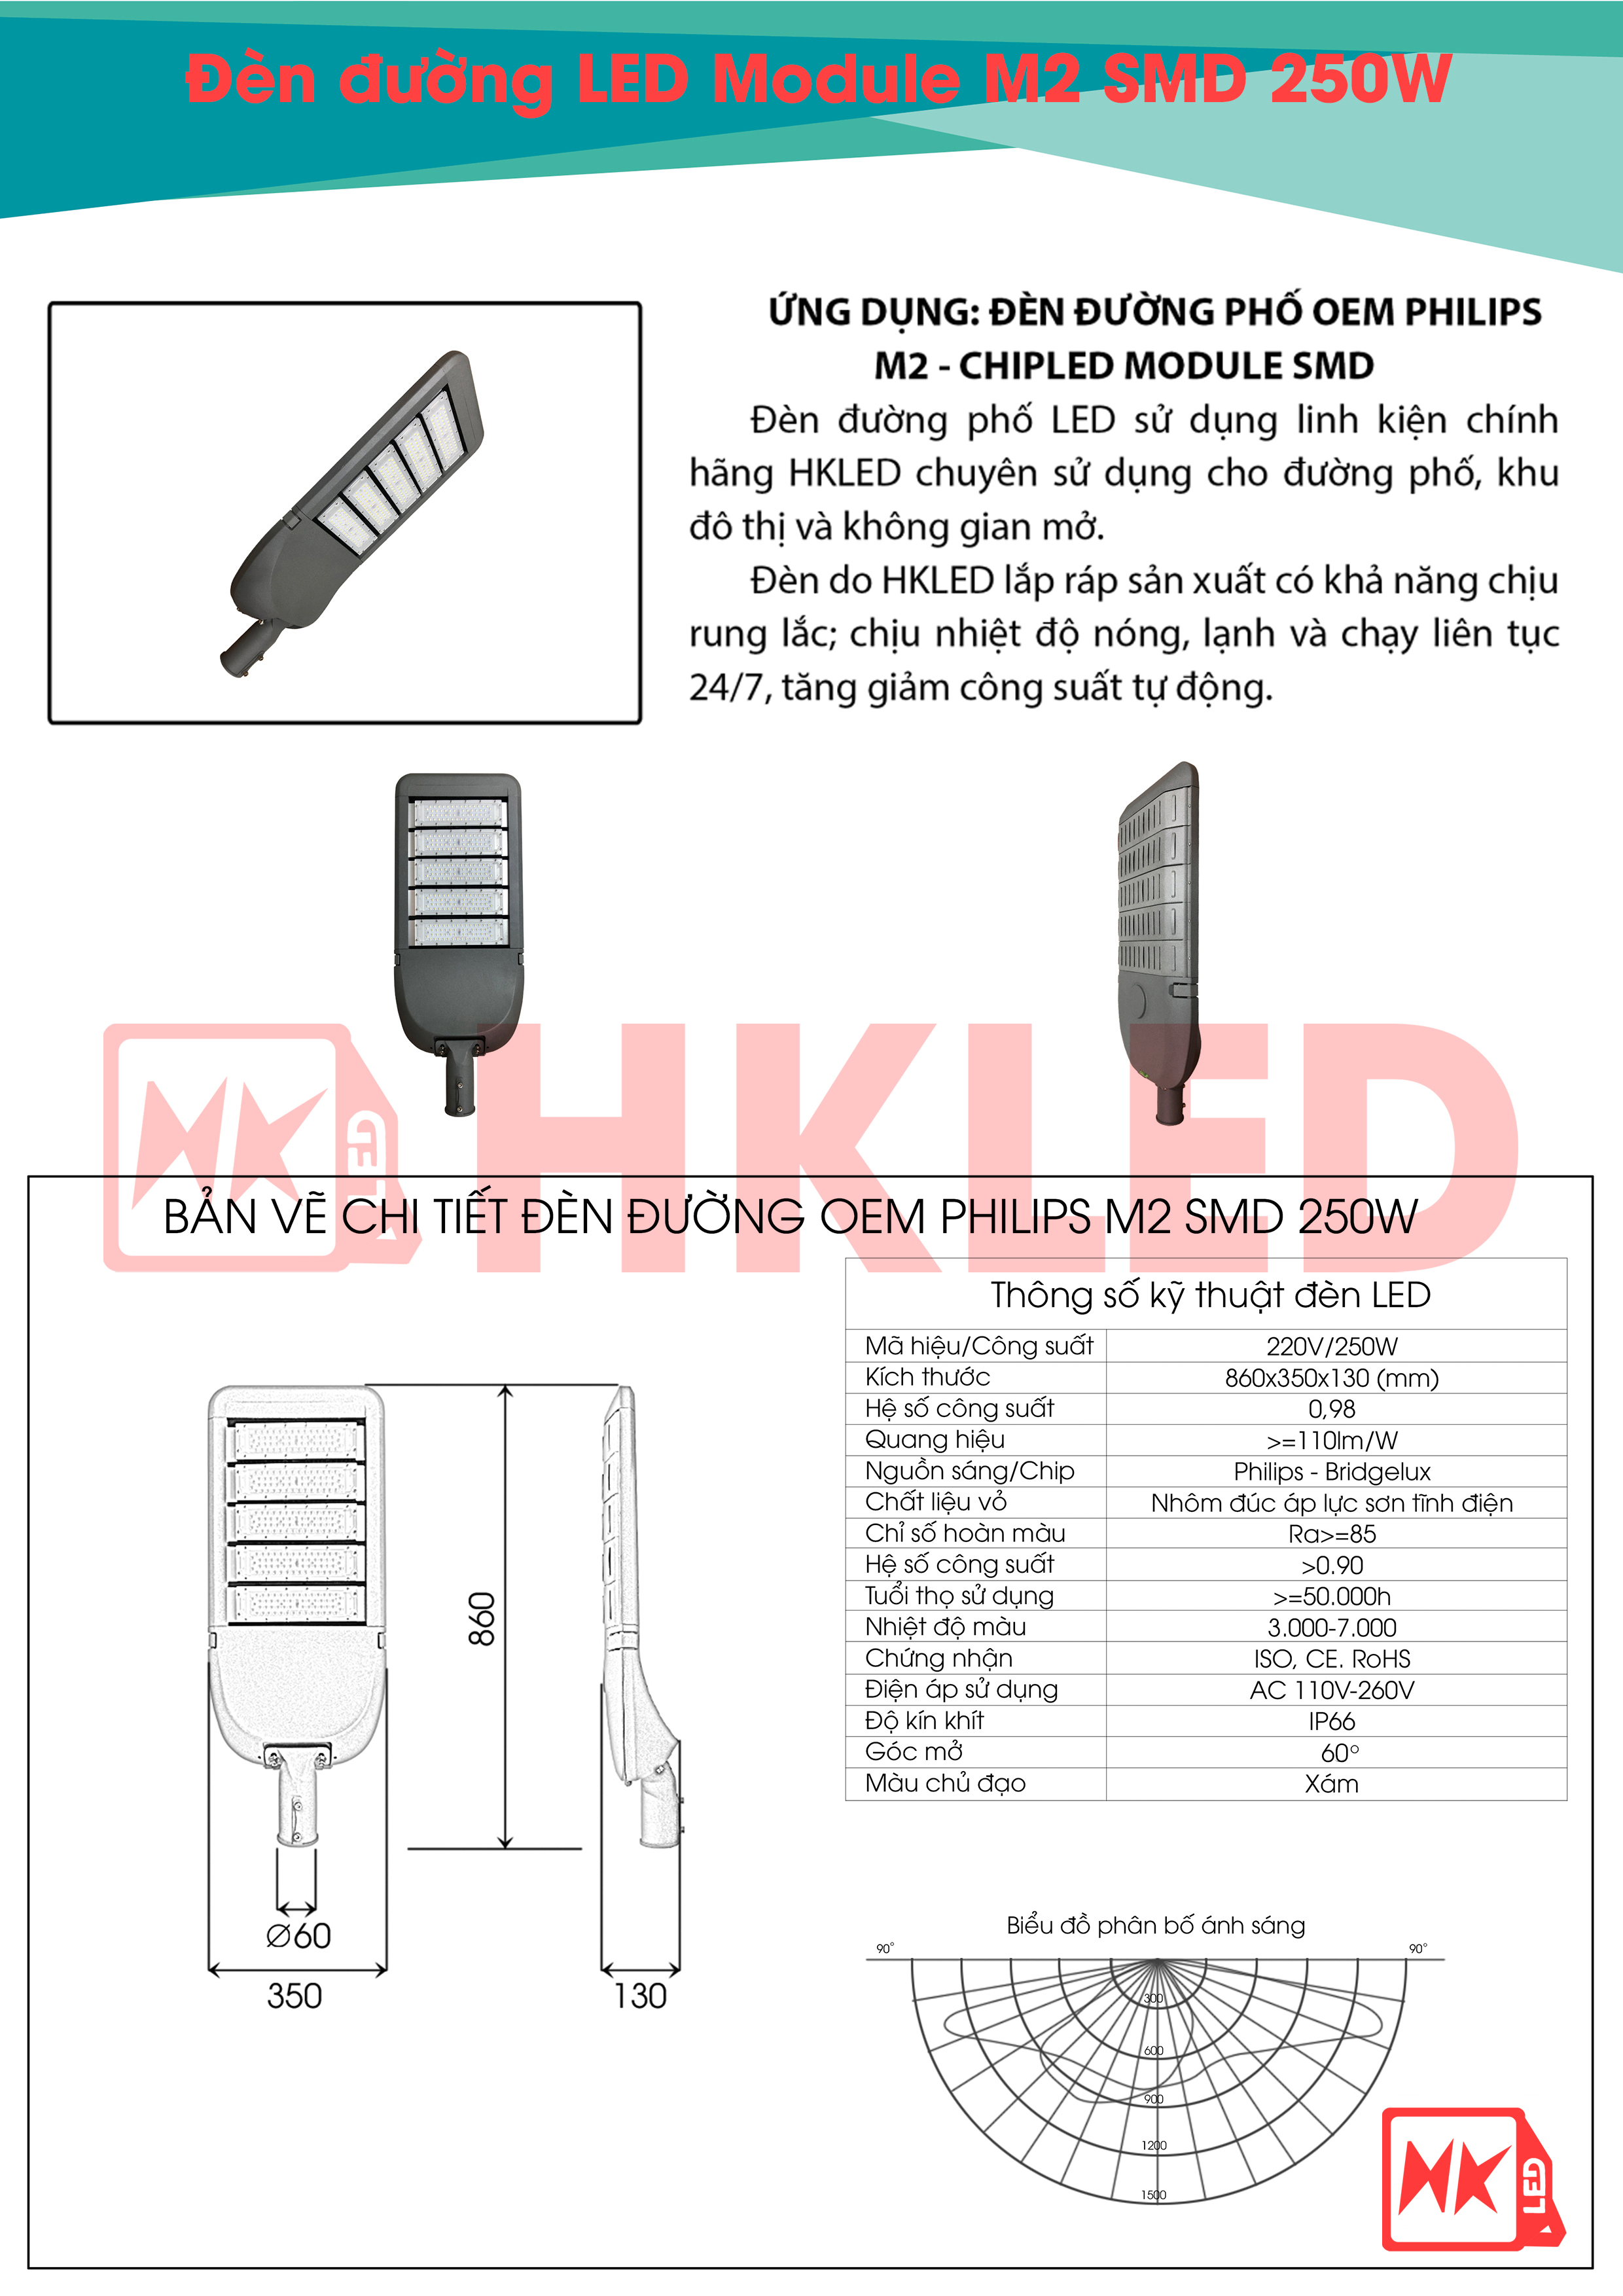 Ứng dụng, bản vẽ chi tiết và thông số kỹ thuật đèn đường LED OEM Philips Module SMD M2 250W